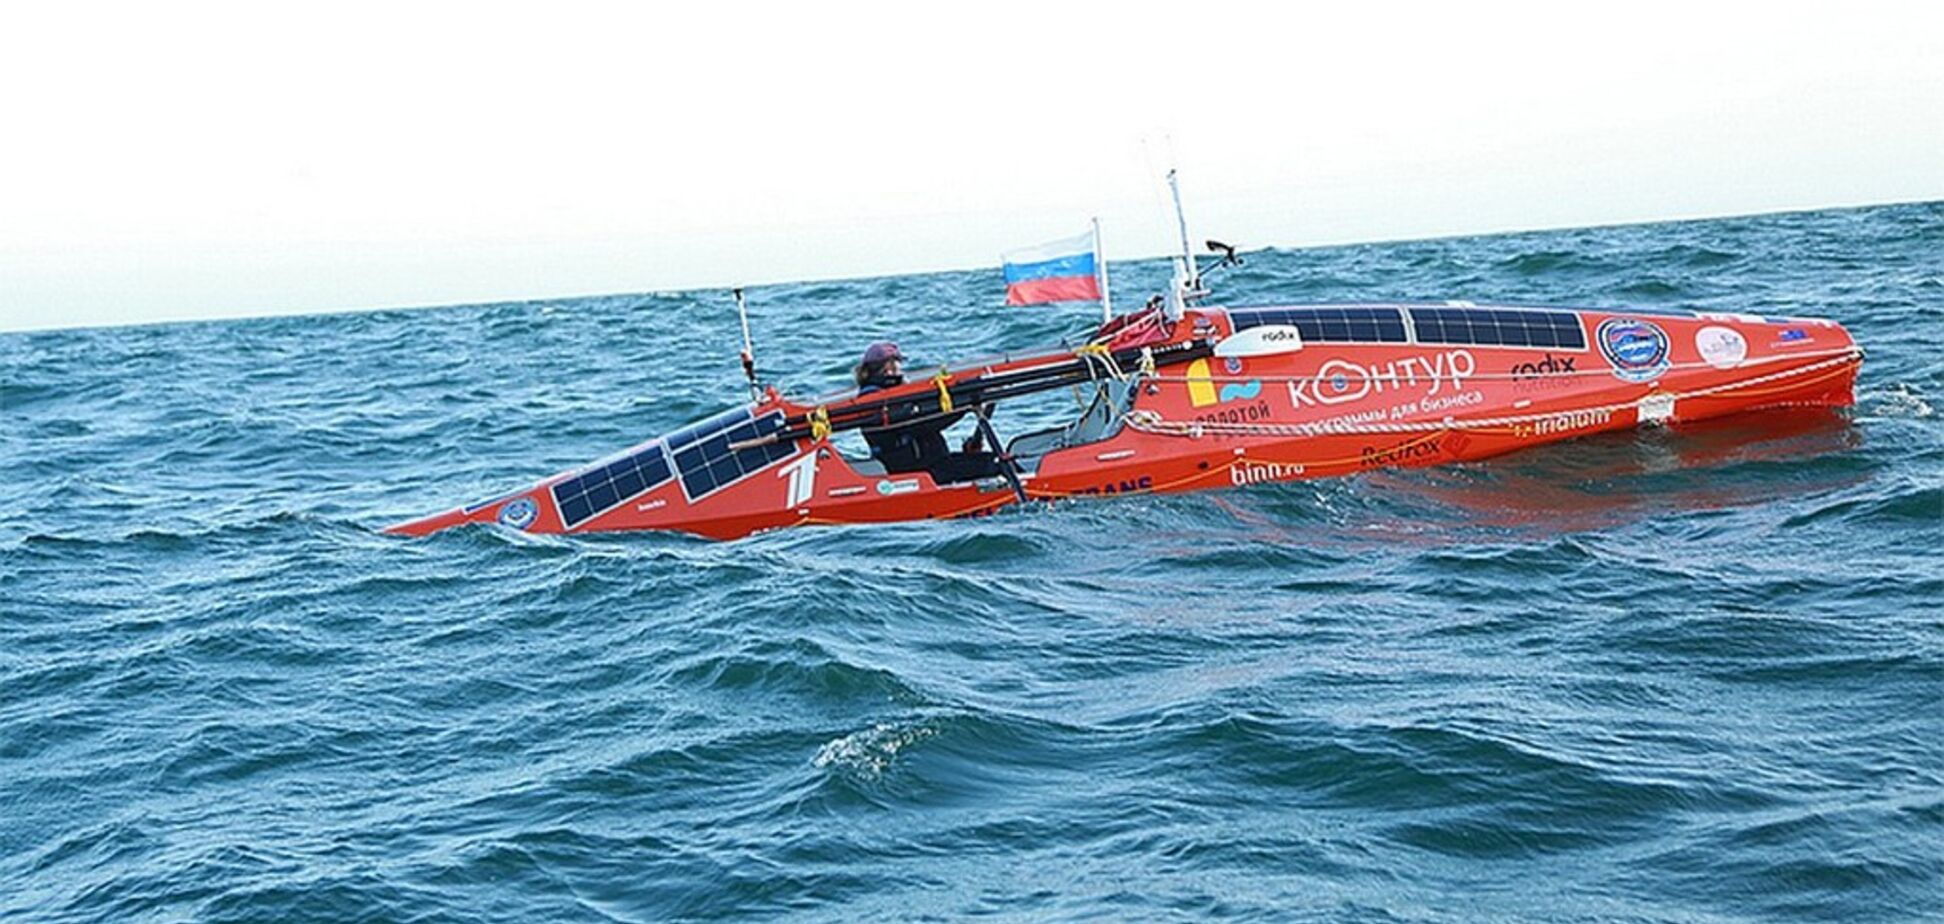 Лодка перевернулась трижды: известный путешественник попал в новое ЧП в океане